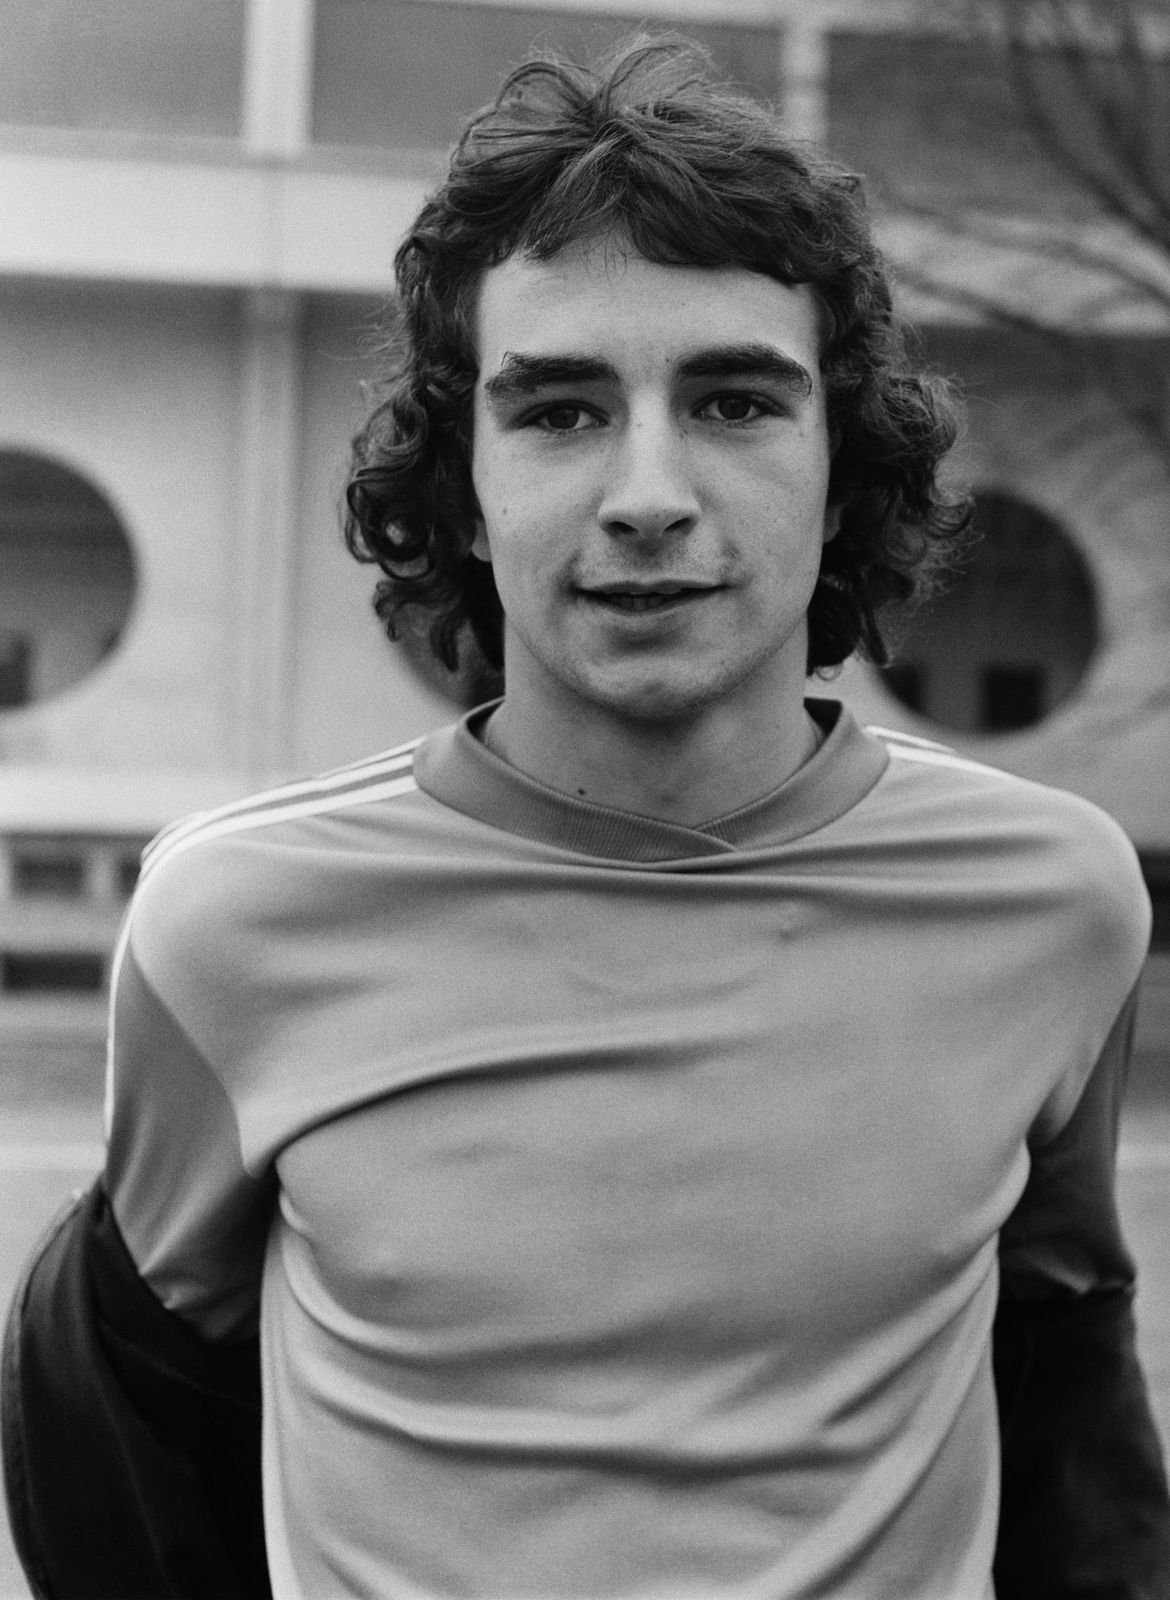 Le footballeur Dominique Rocheteau dans les années 70 | Photo : Getty Images.